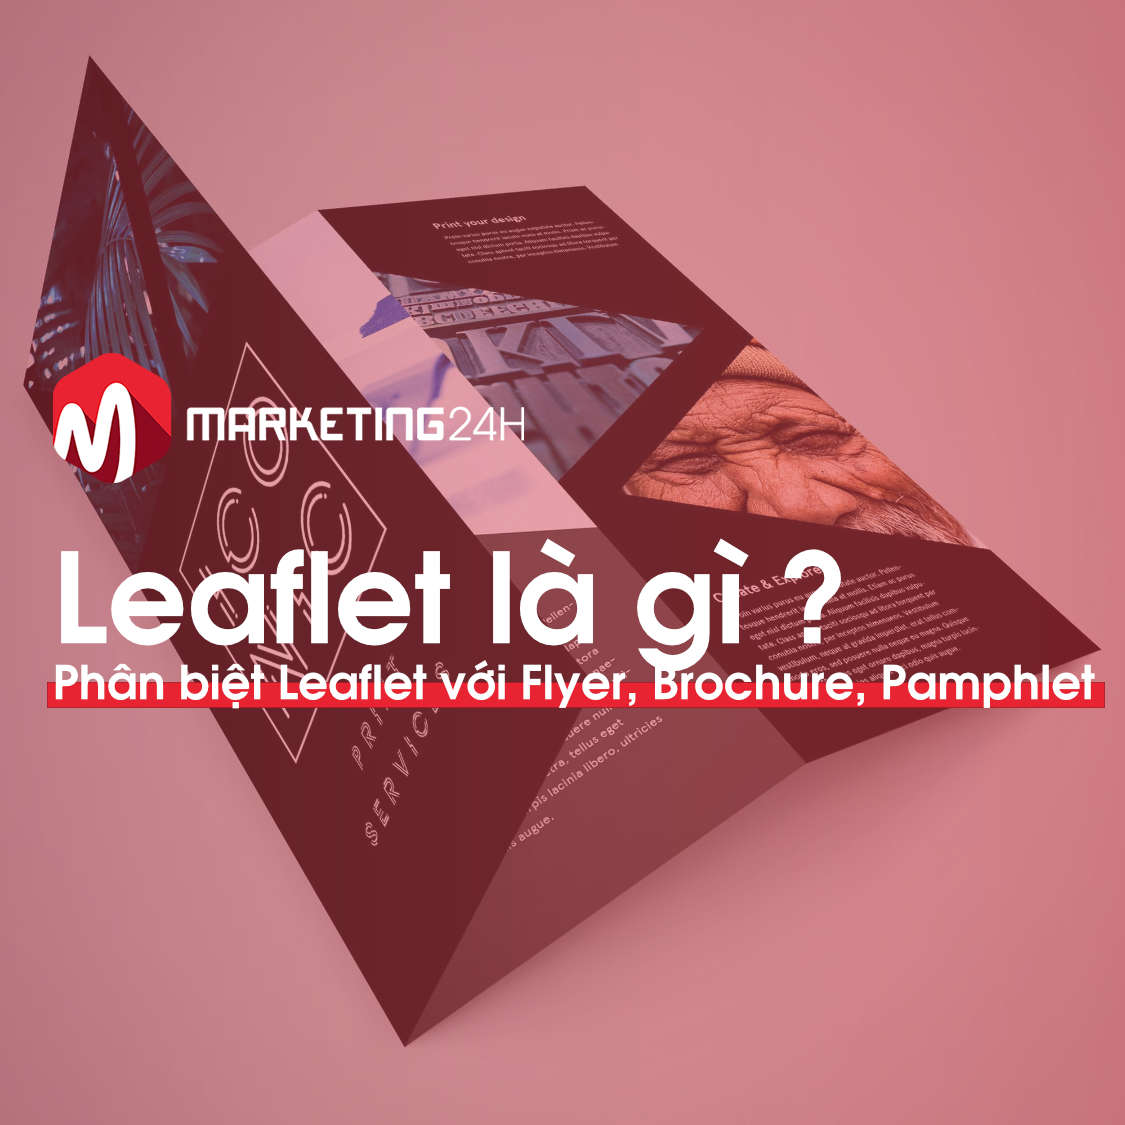 Leaflet-la-gi-Marketing24h.vn